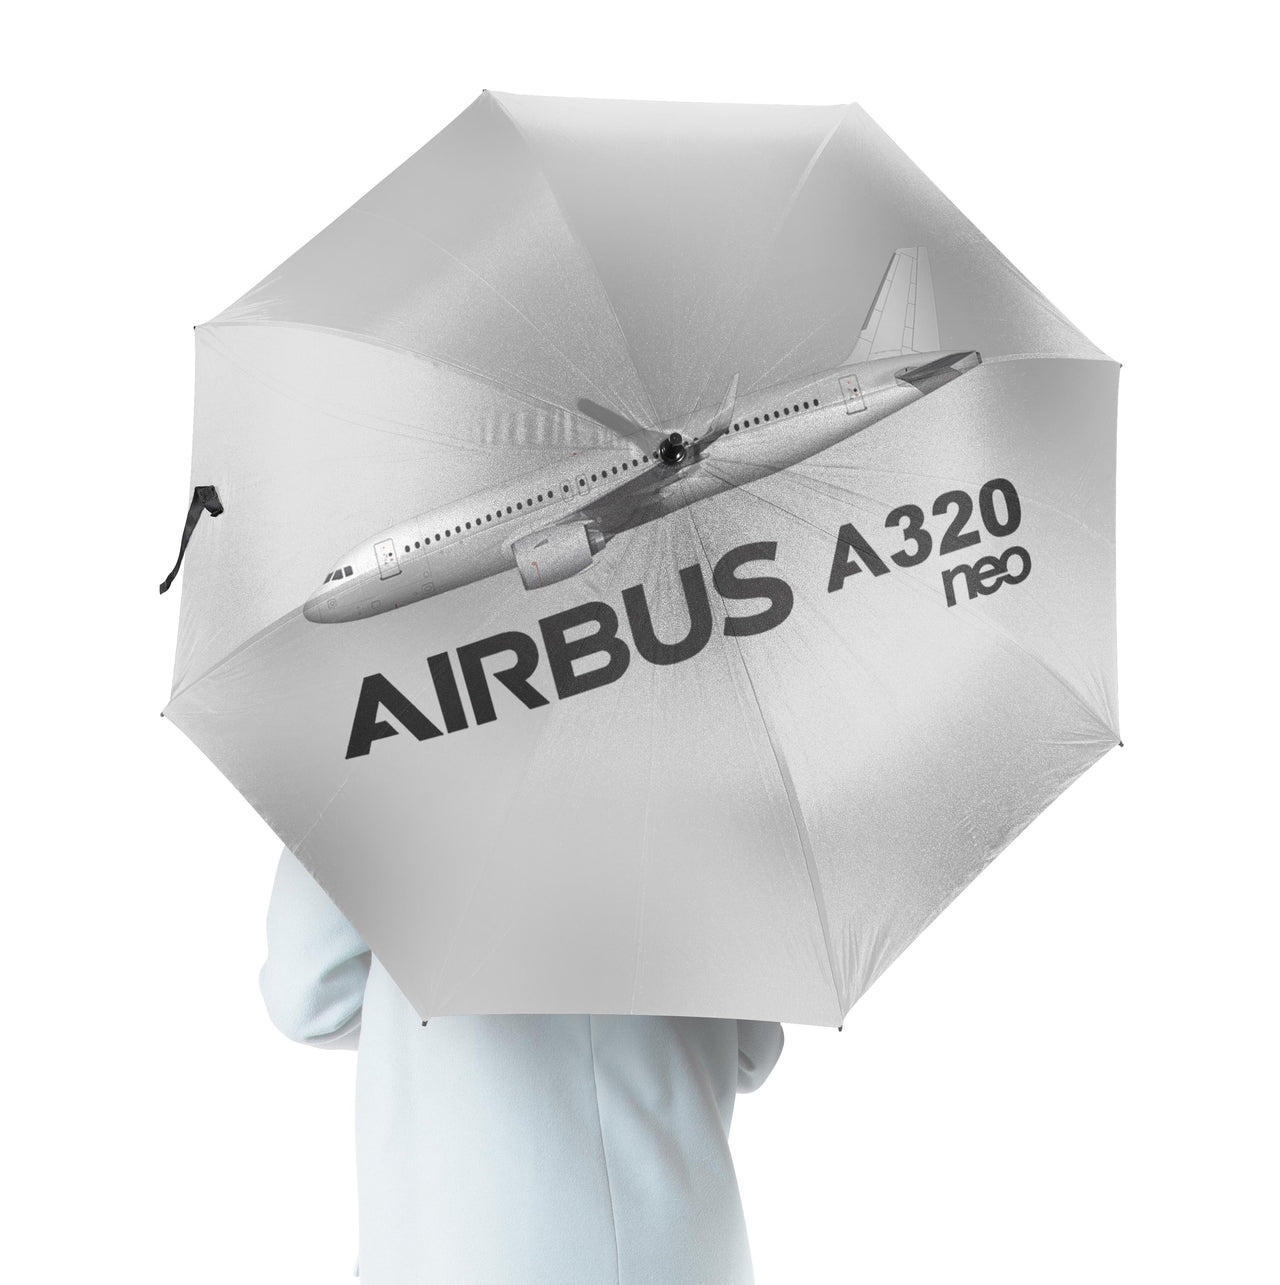 The Airbus A320Neo Designed Umbrella